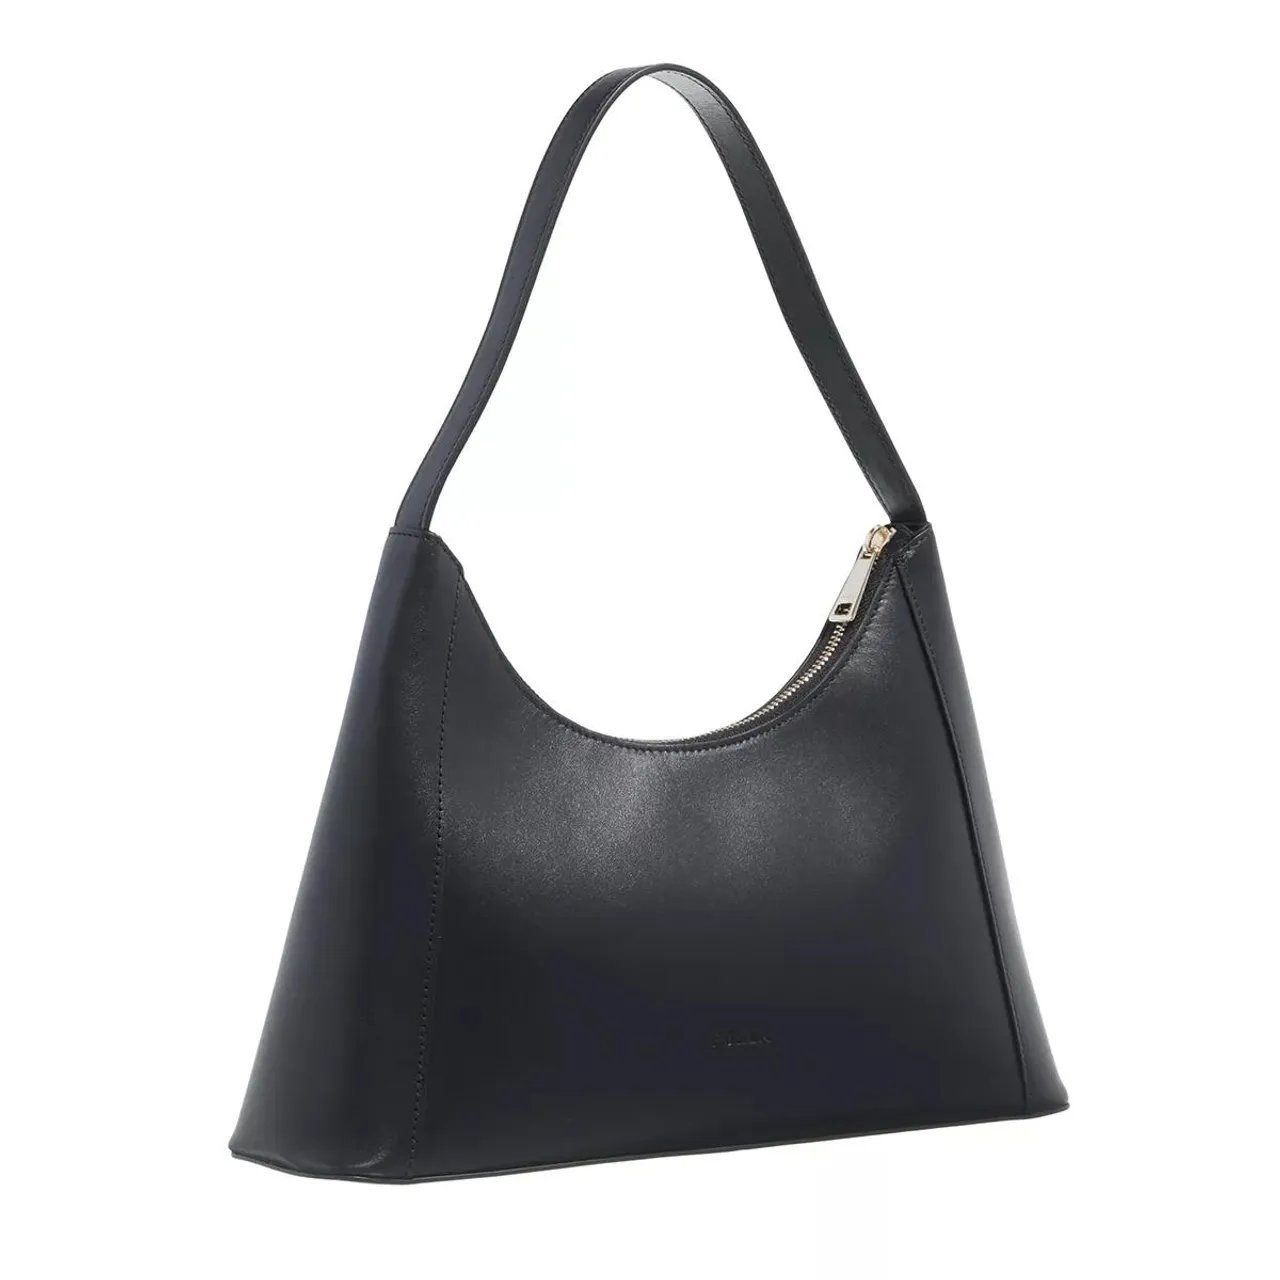 Furla Hobo Bags - Furla Diamante S Shoulder Bag - black - Hobo Bags for ladies